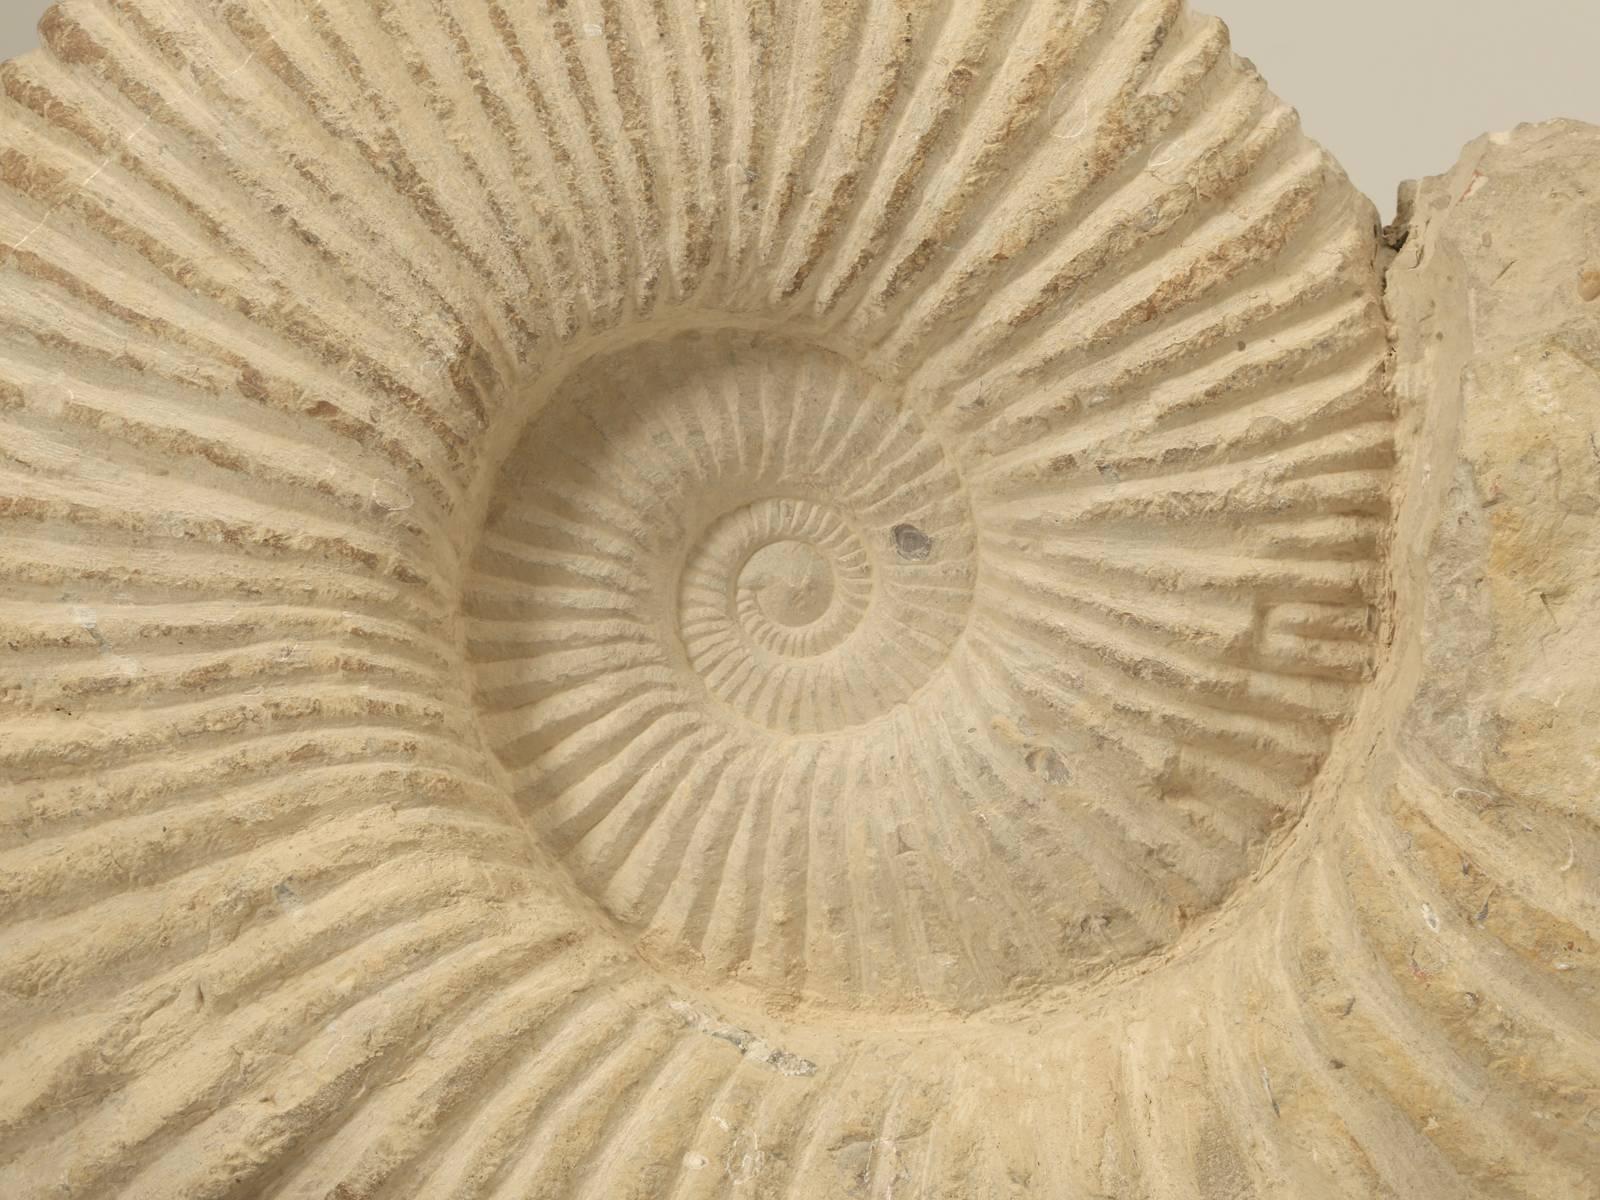 where are ammonite fossils found